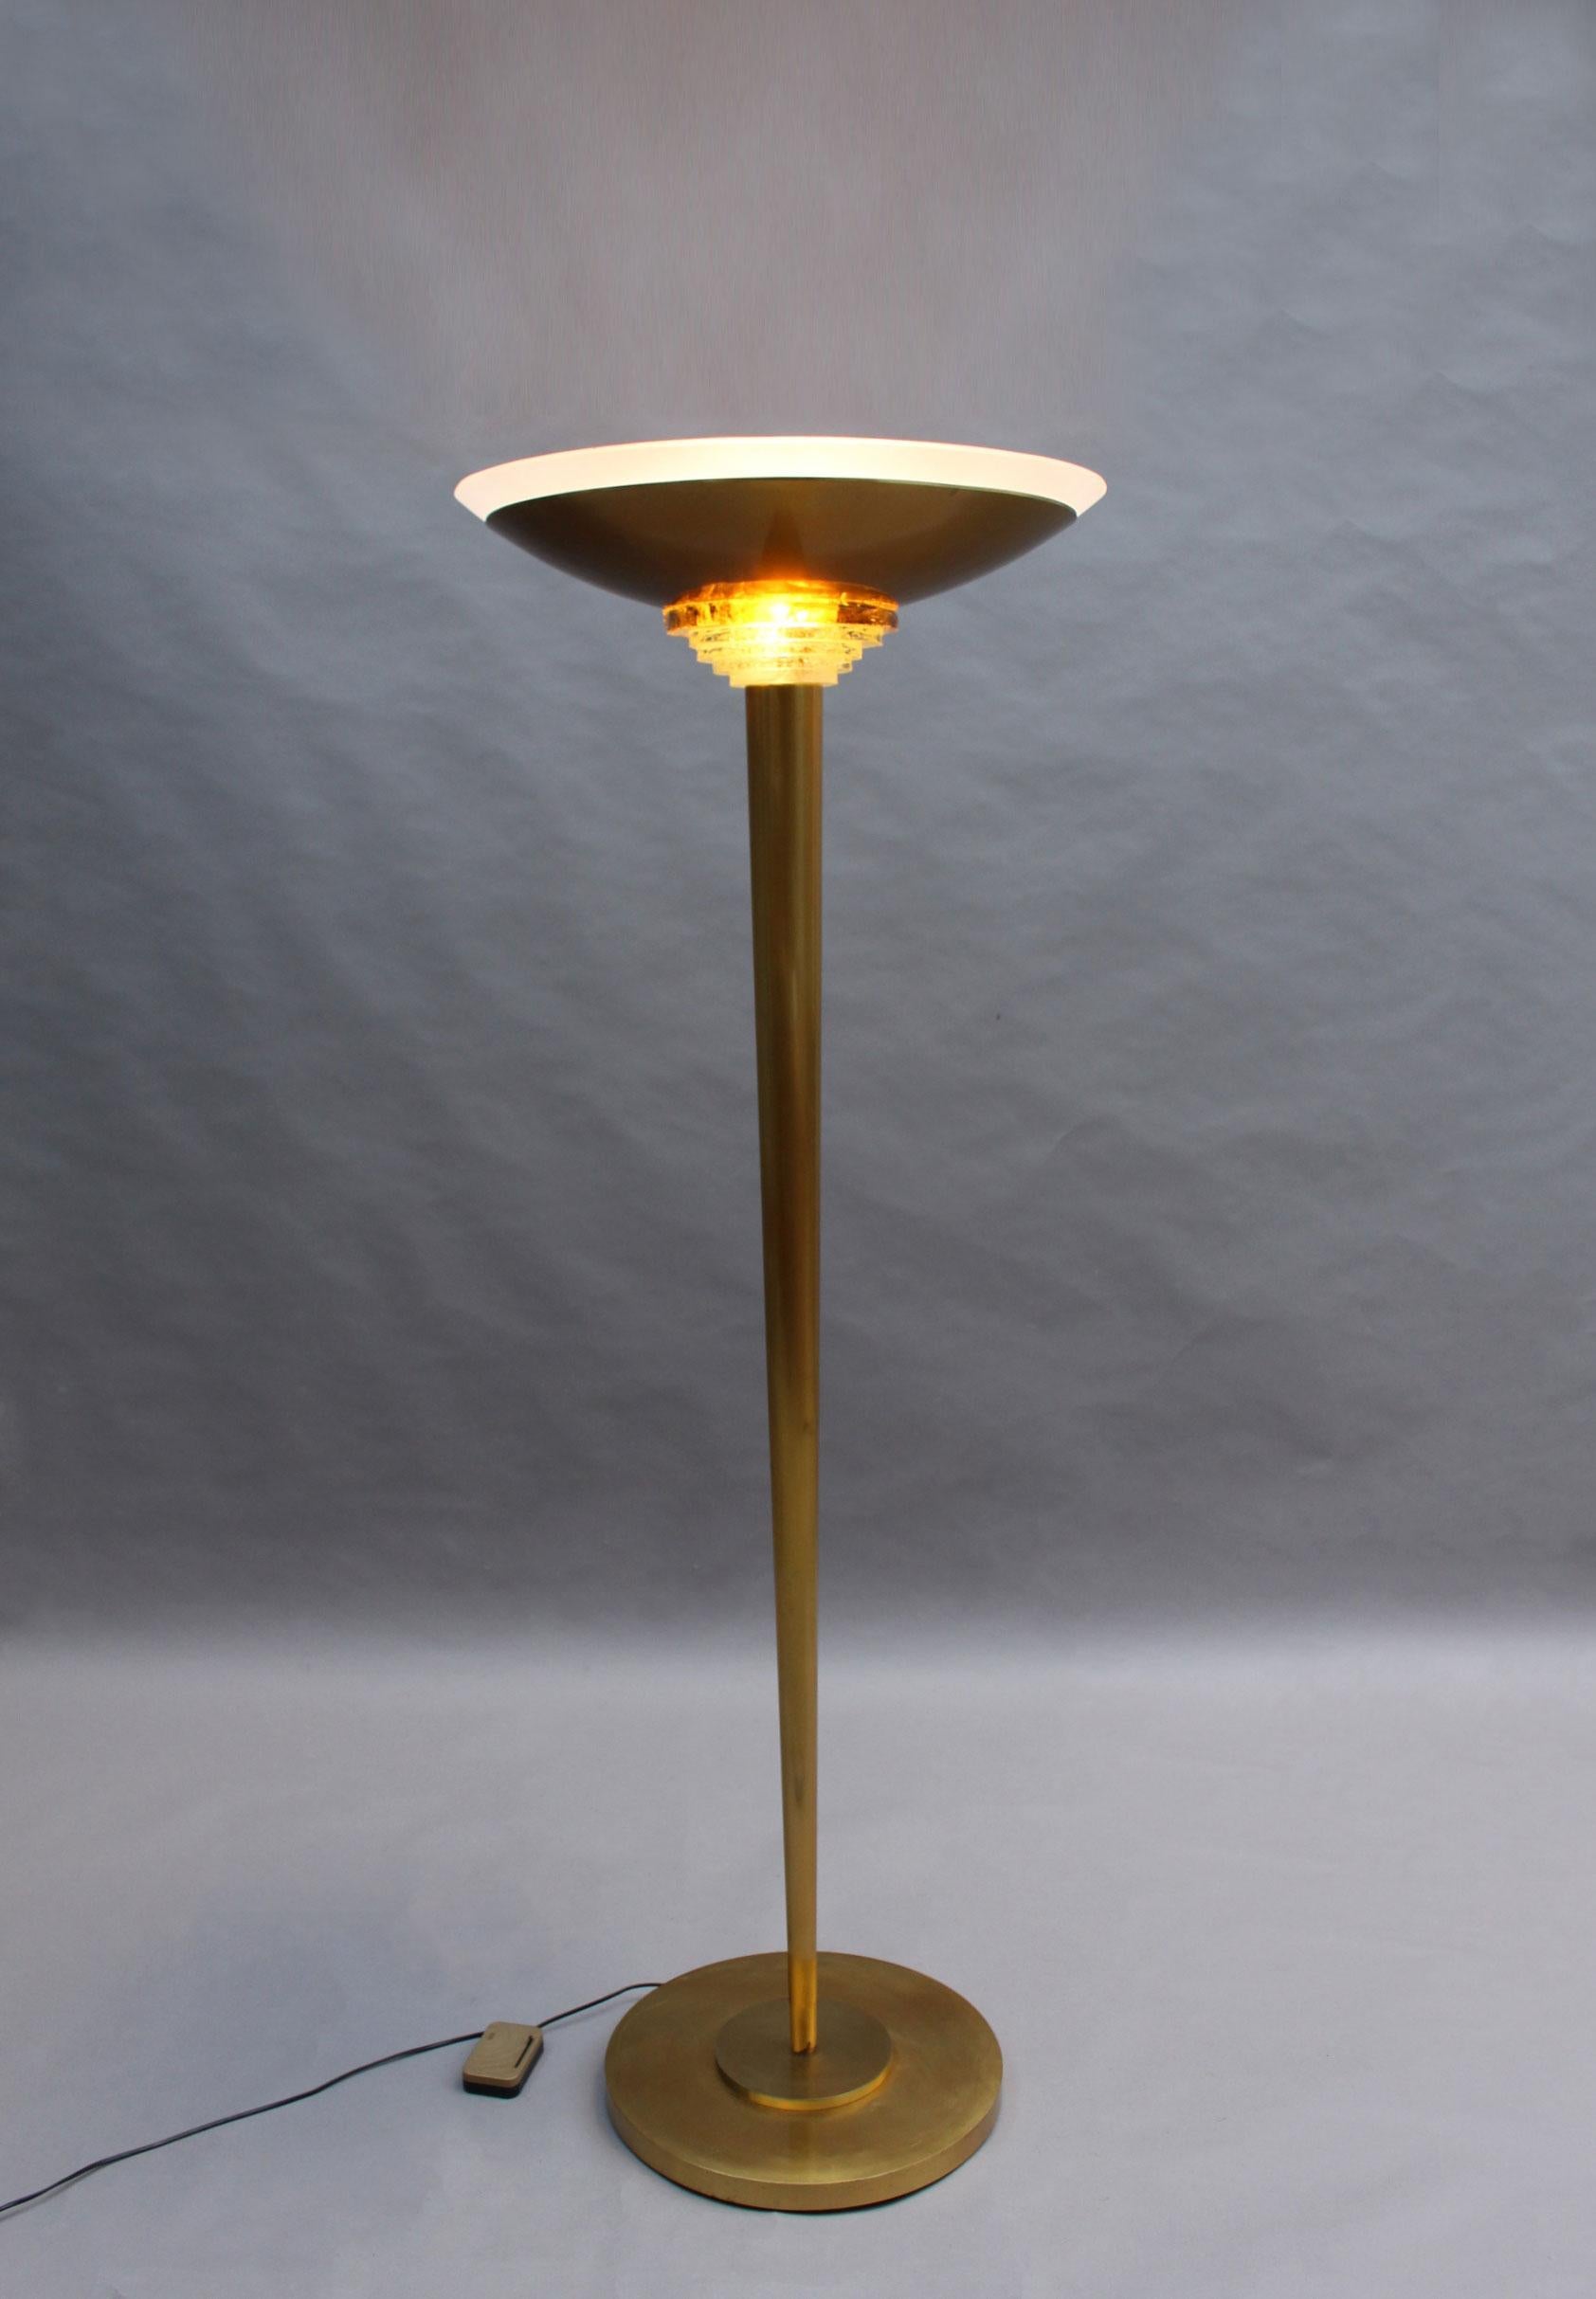 Avec une base ronde à deux niveaux, une tige conique qui contient une pile de plaques de verre taillé transparent et ambré et un bol en bronze sur lequel repose un bol en verre optique.
Modèle créé en 1938
Les États-Unis ont été recâblés avec une